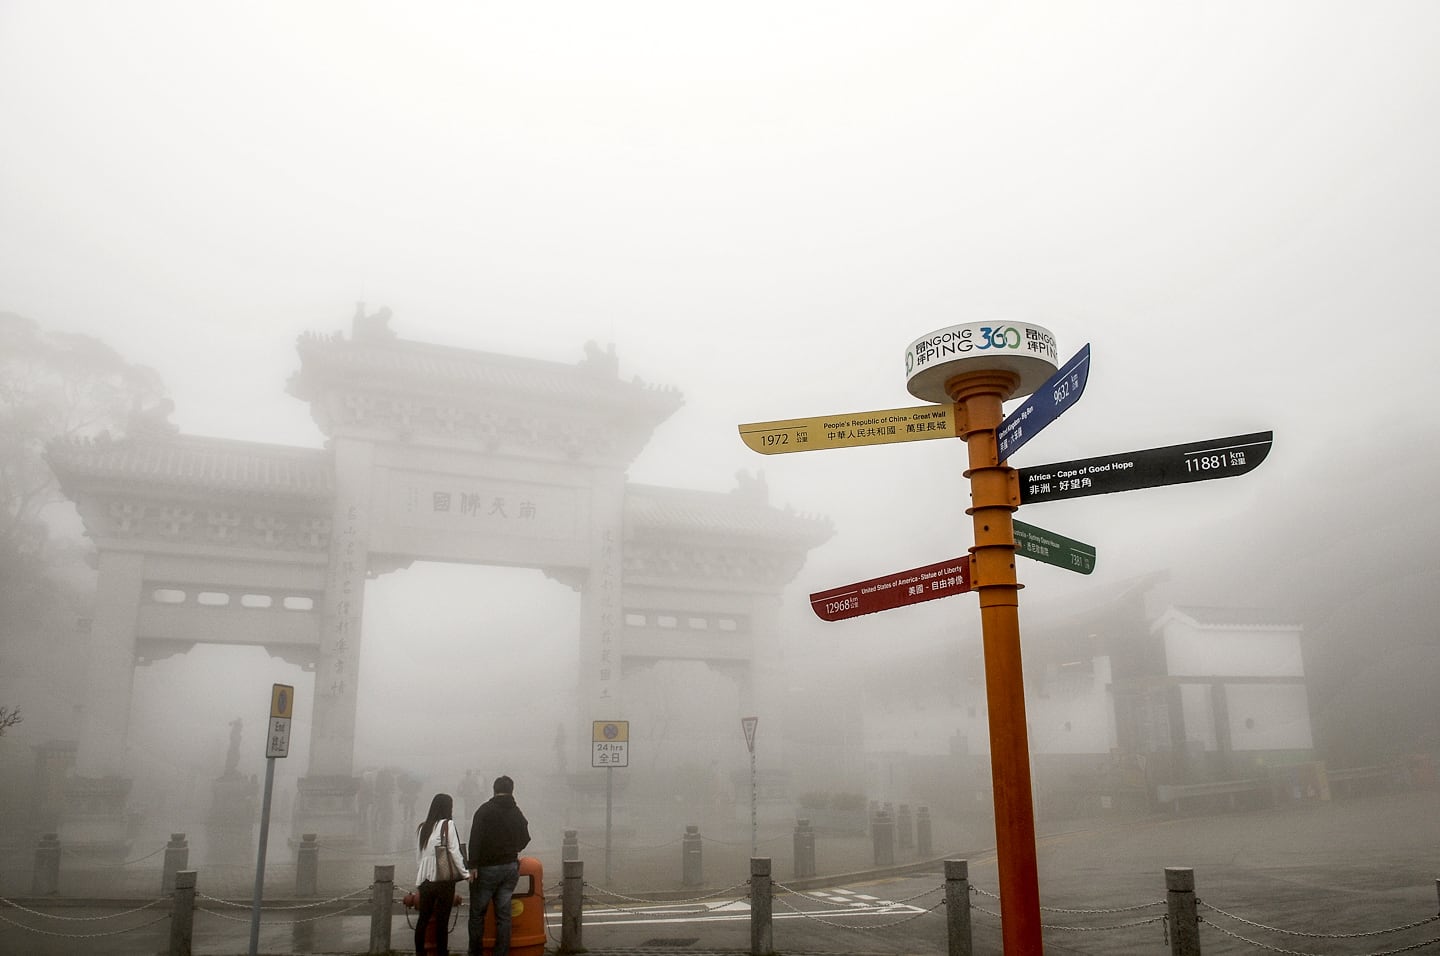 Tian Tan Buddha Hong Kong big buddha gate shrouded in fog